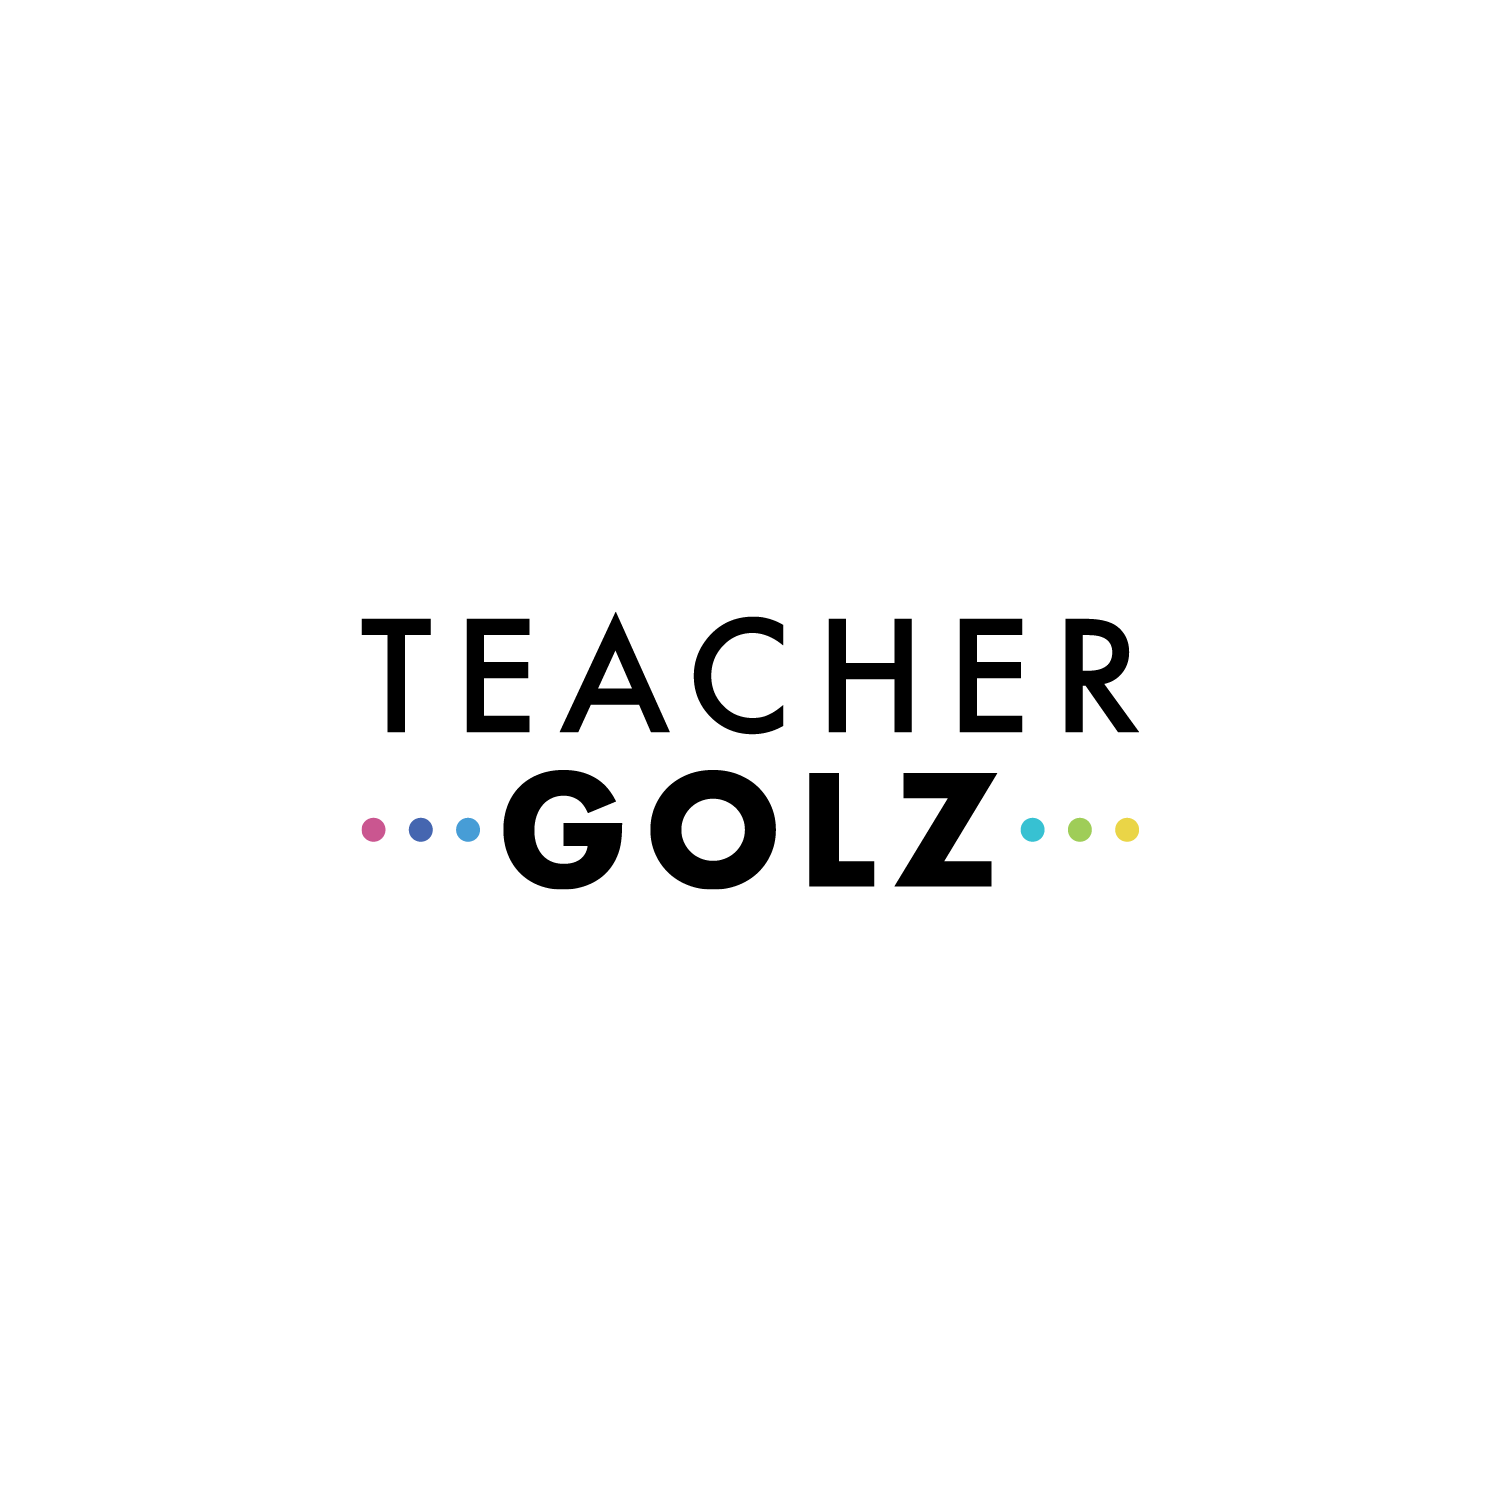 TEACHER GOLZ